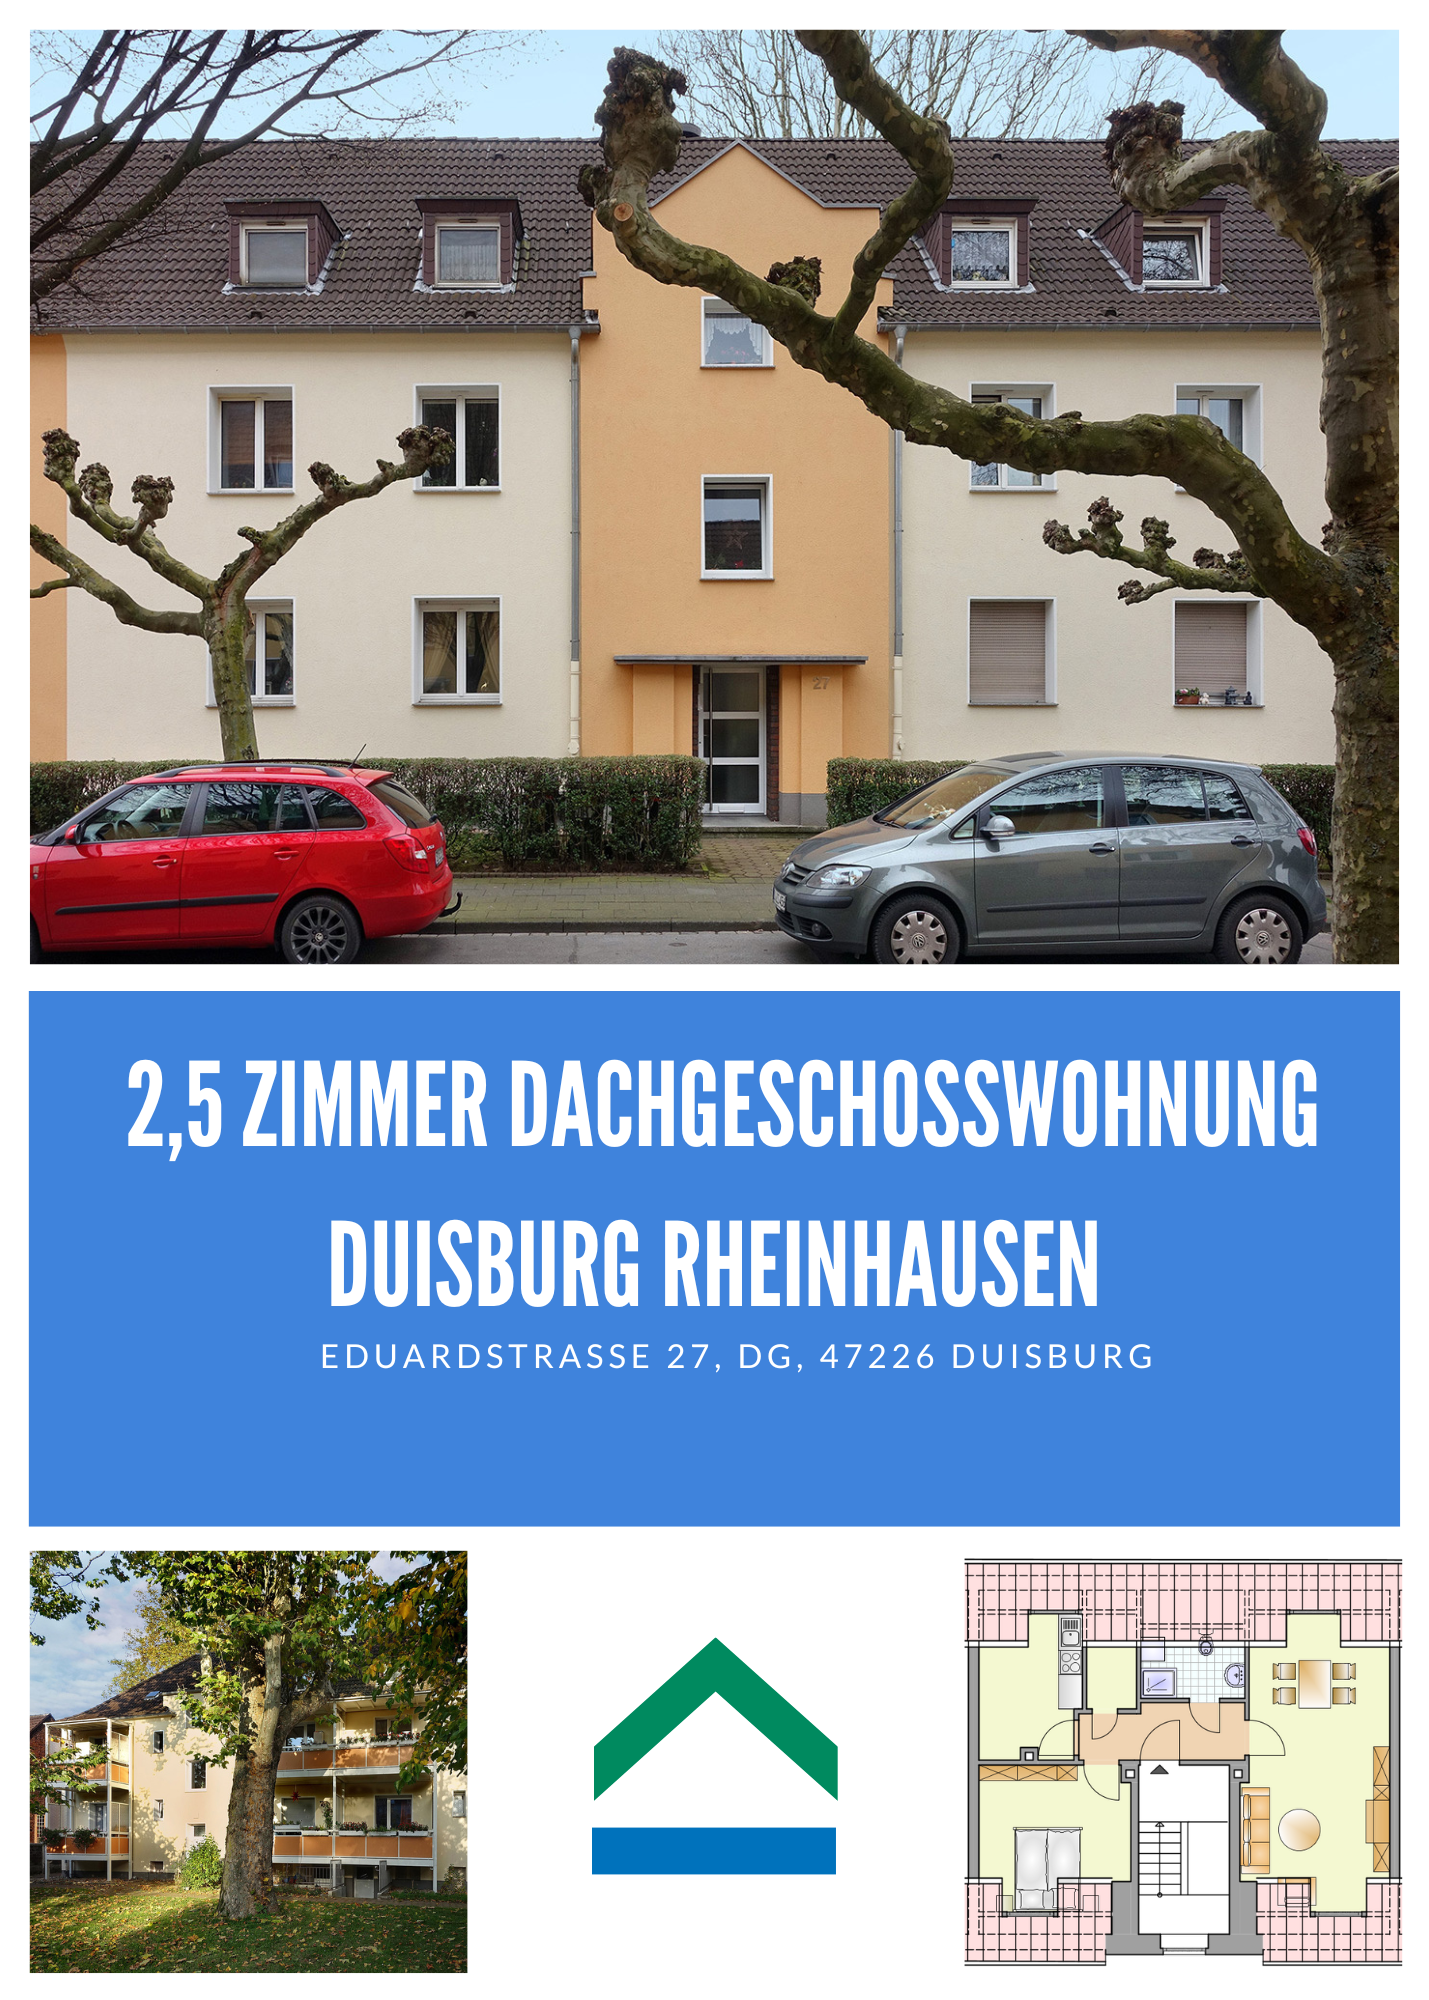 2,5 Zimmer Dachgeschosswohnung – Duisburg Rheinhausen, 47226 Duisburg, Dachgeschosswohnung